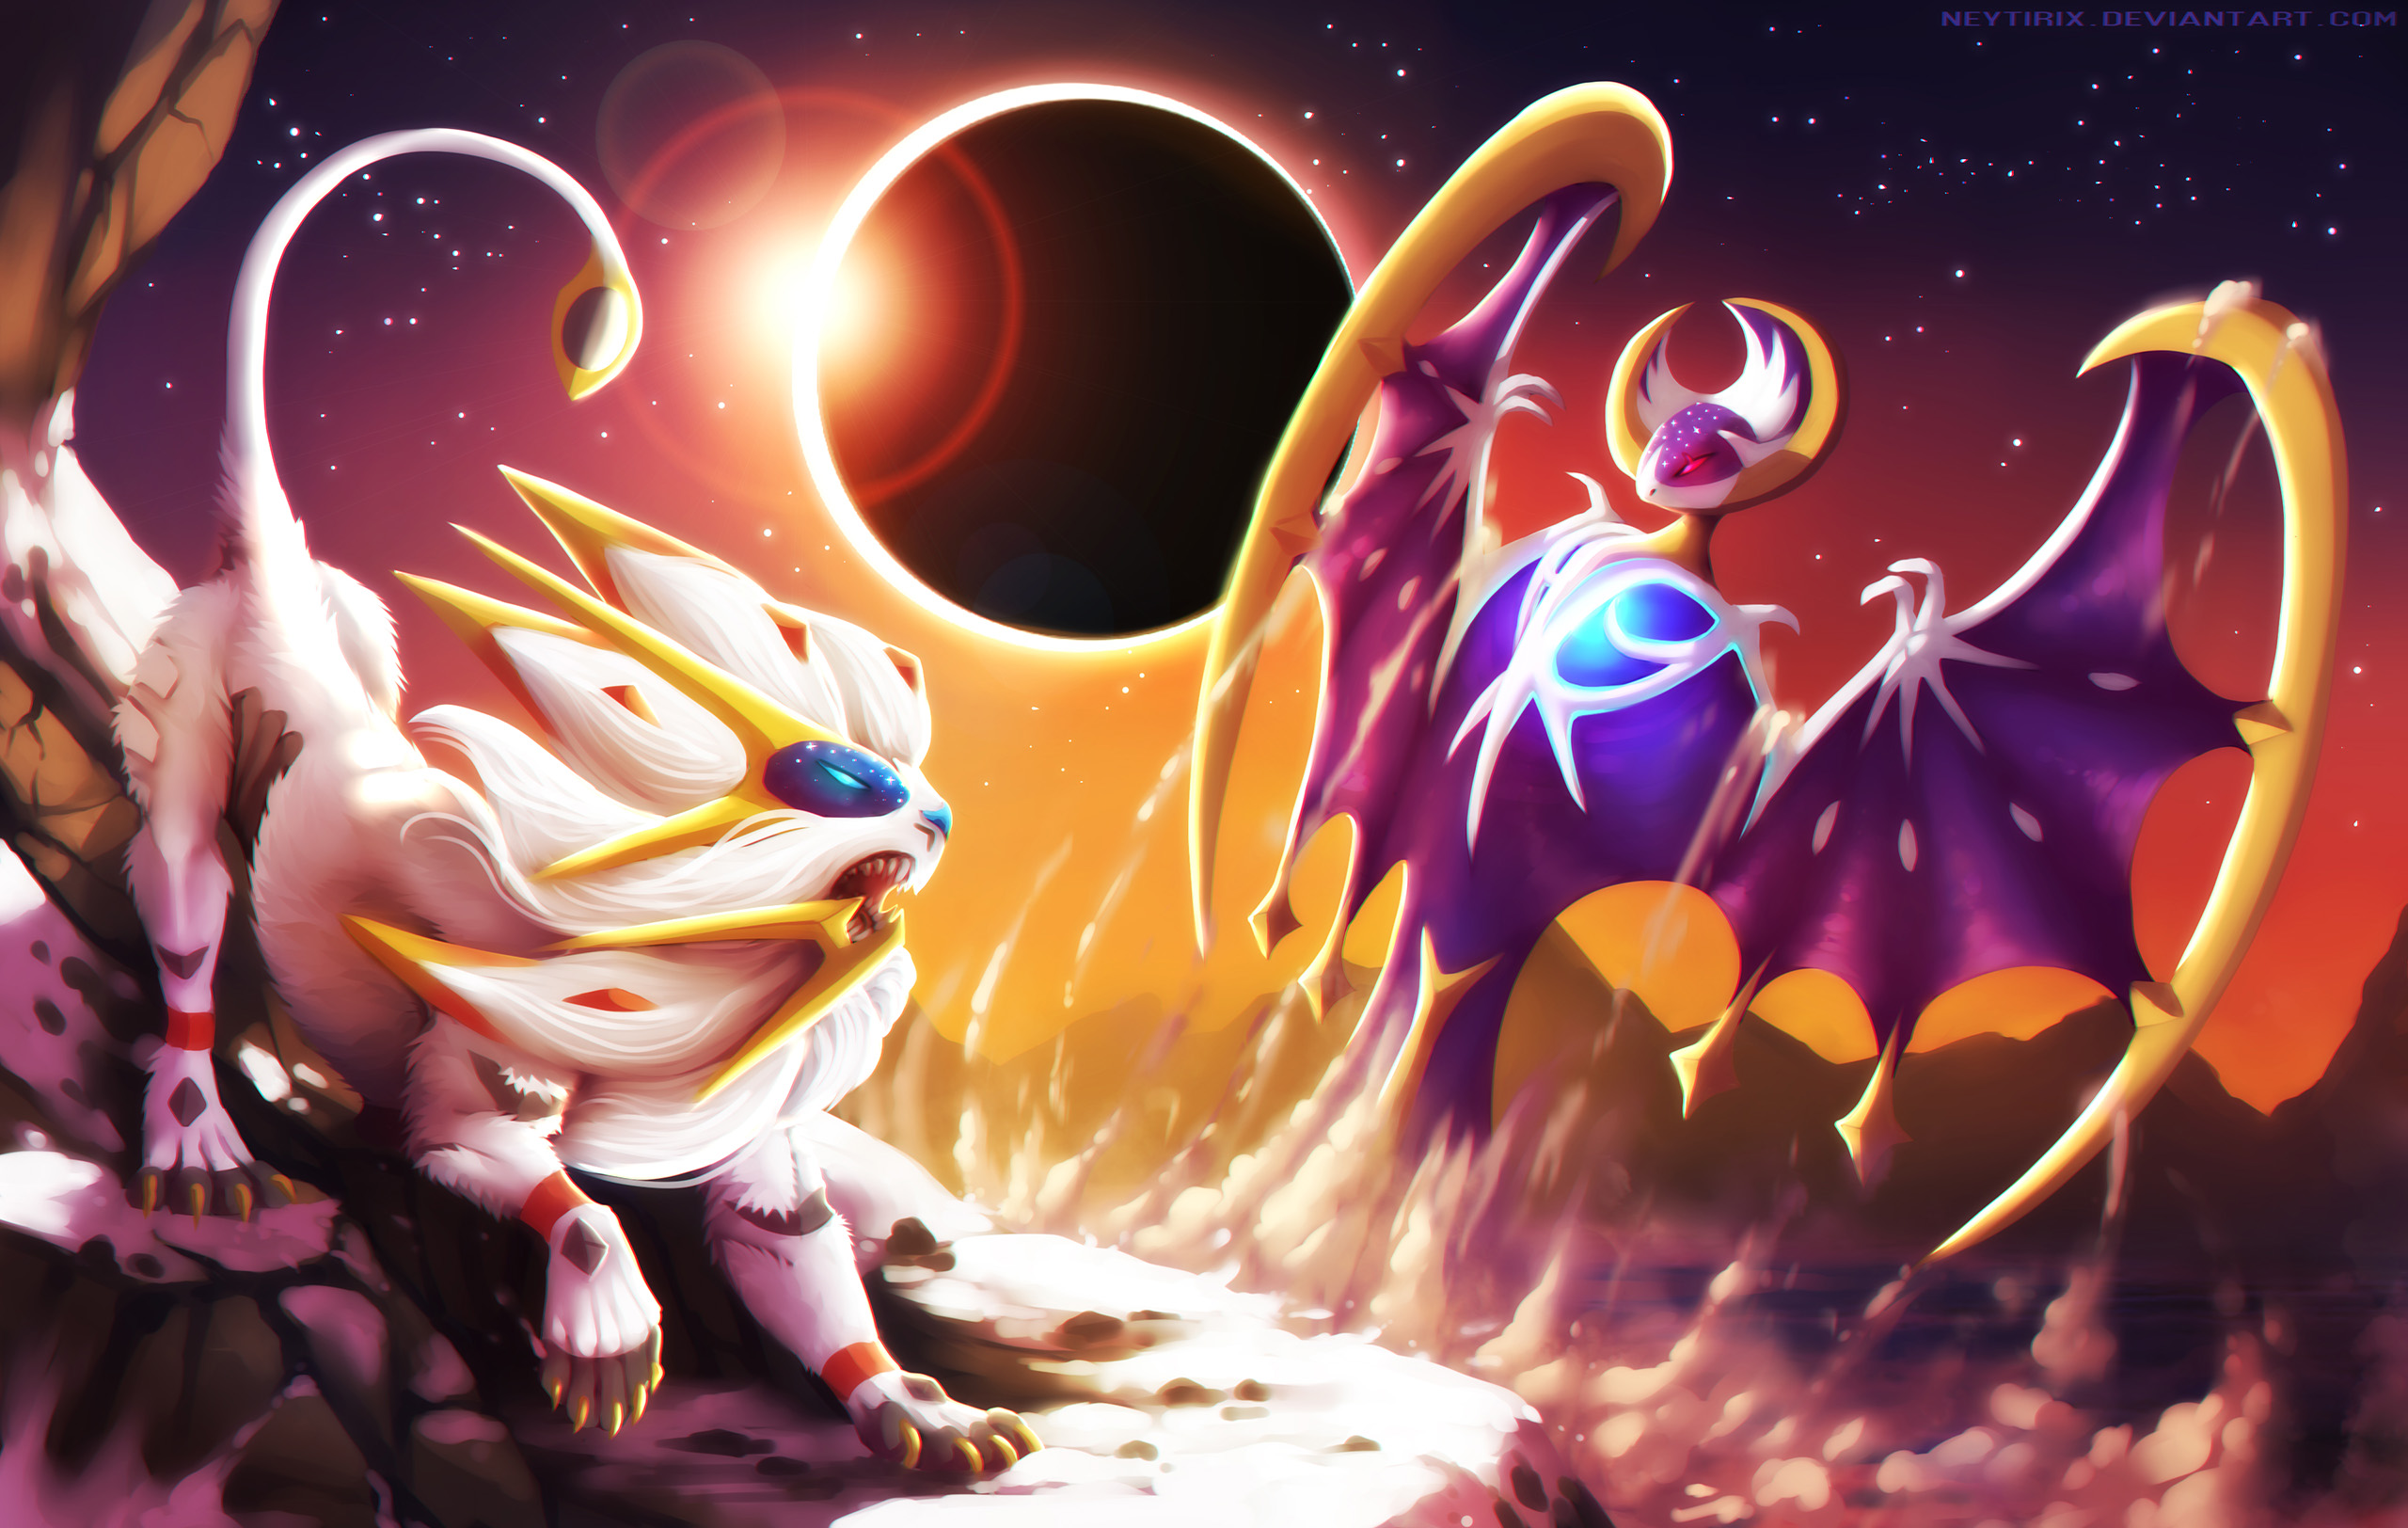 Pokemon Sun And Moon Desktop Background